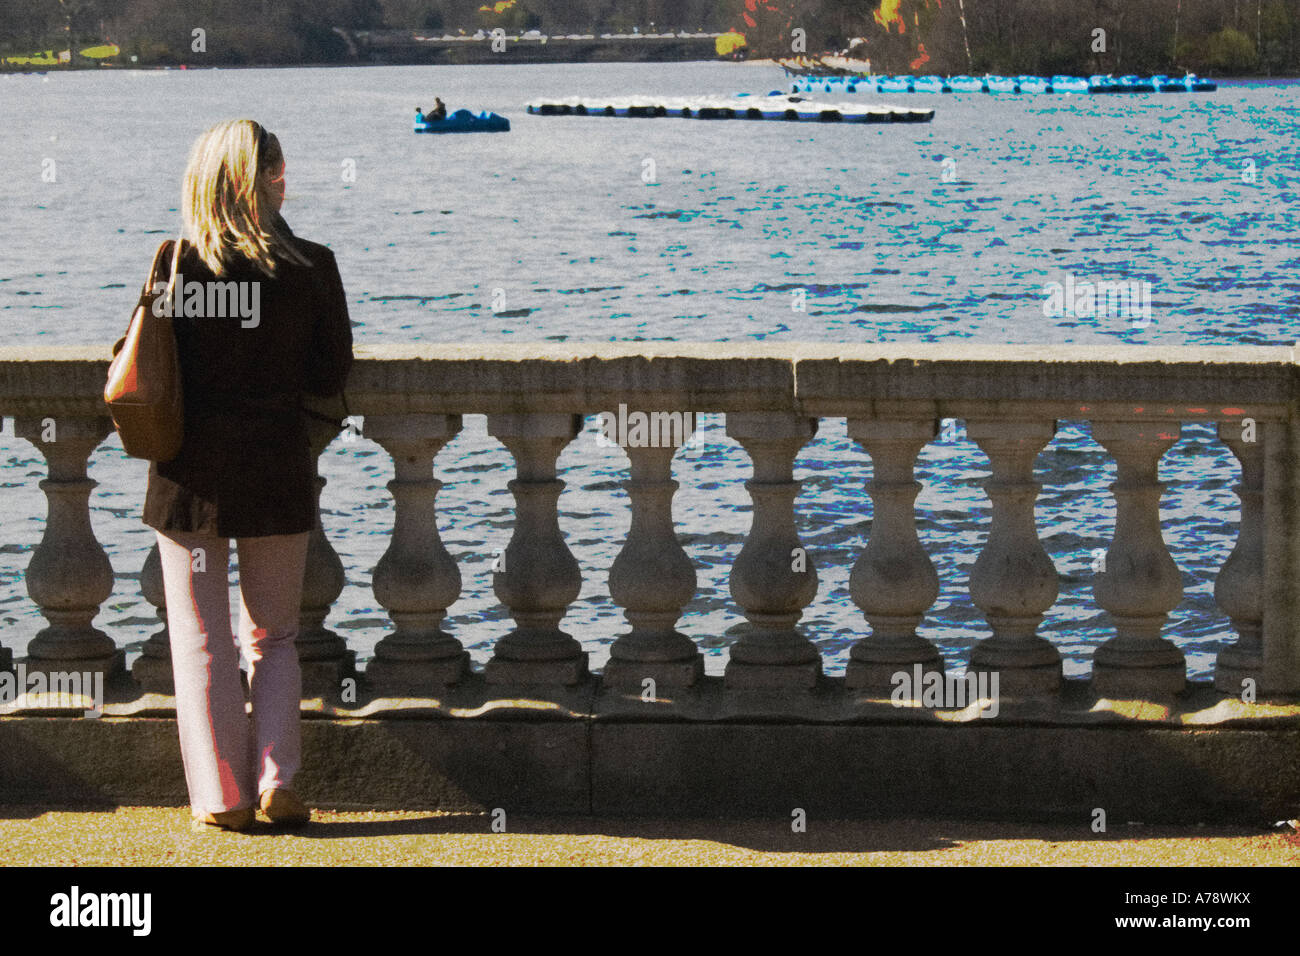 Fille de serpentine. Jeune femme regarde au-dessus du lac du pont. Postérisation subtiles utilisées pour créer des effets de peinture. Banque D'Images